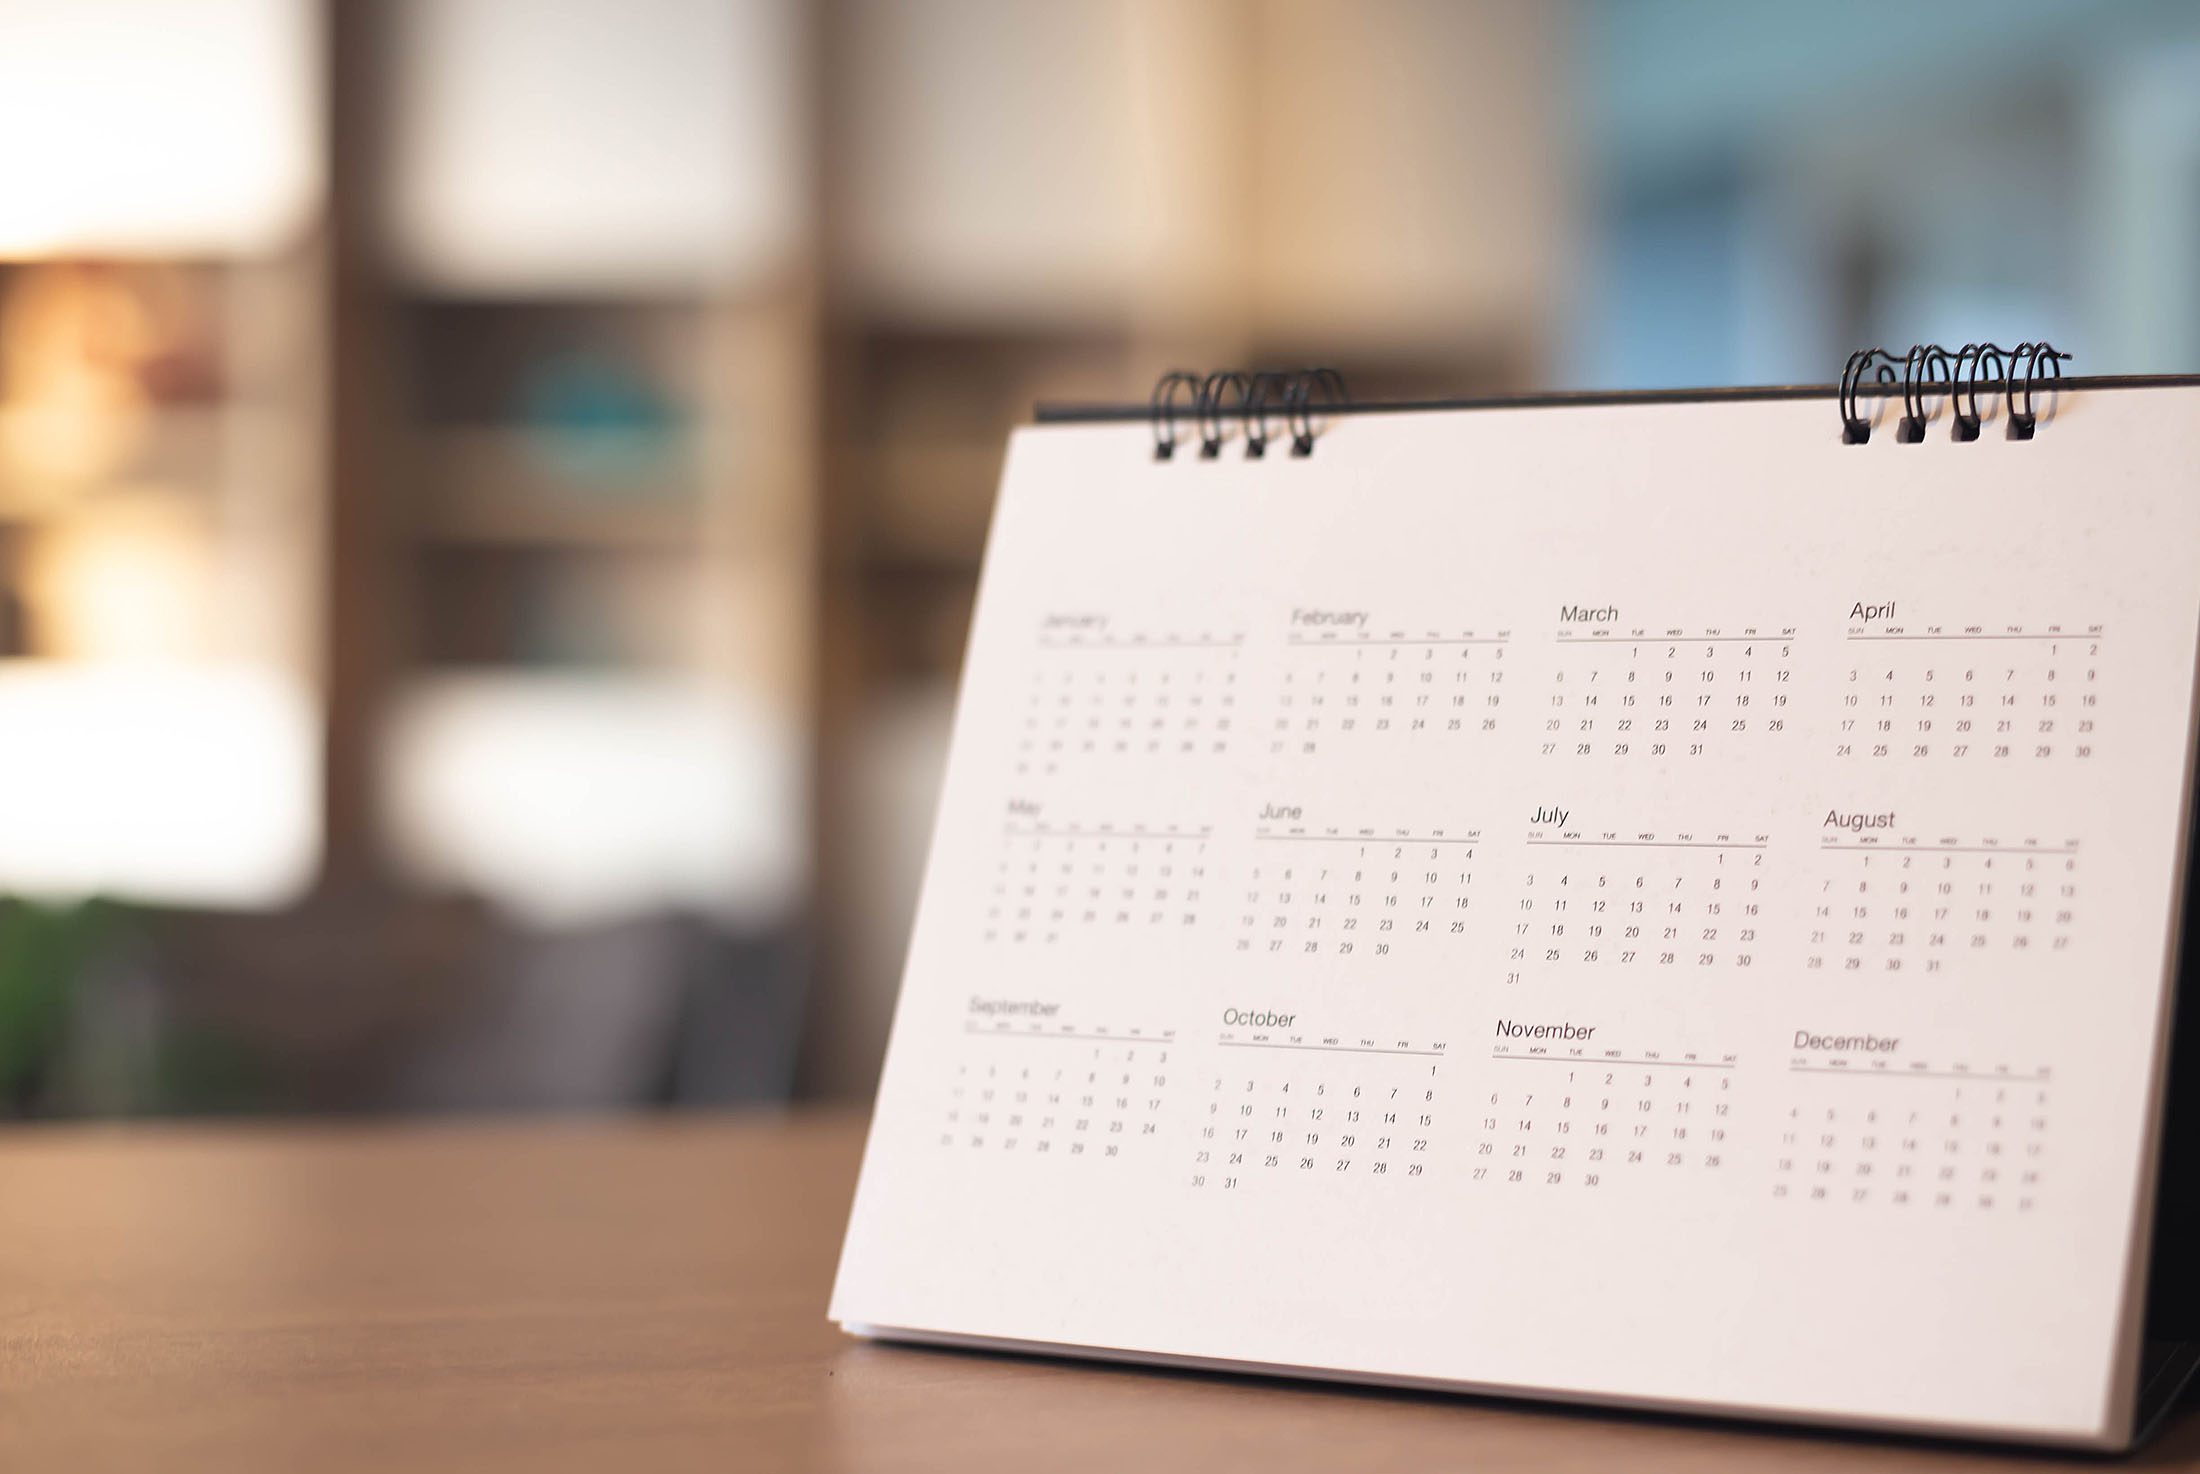 Calendar on desk